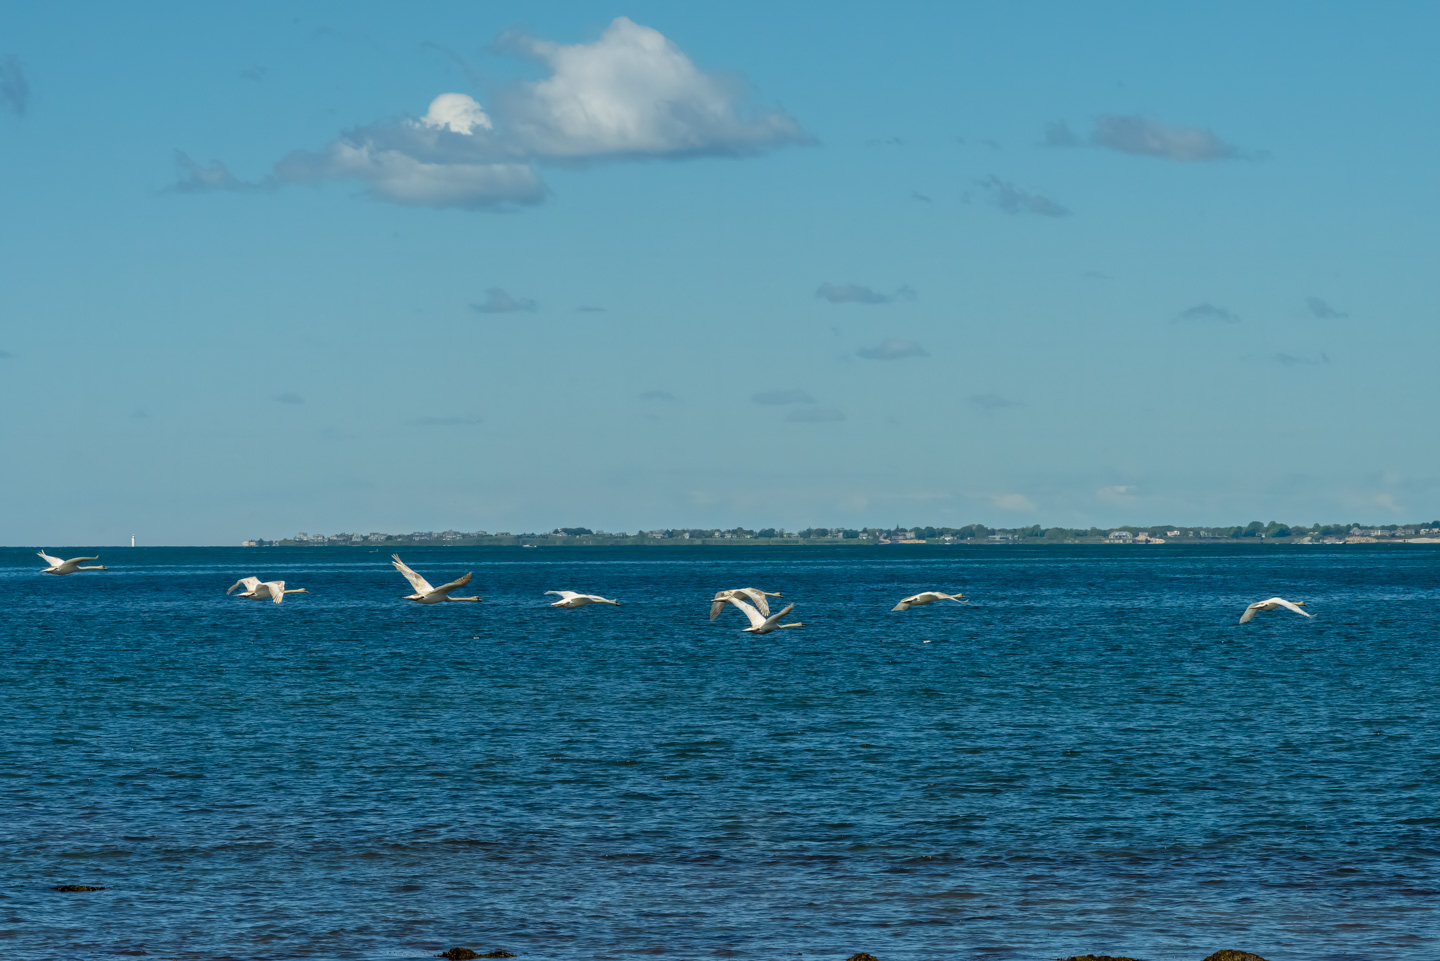 mute swans in flight